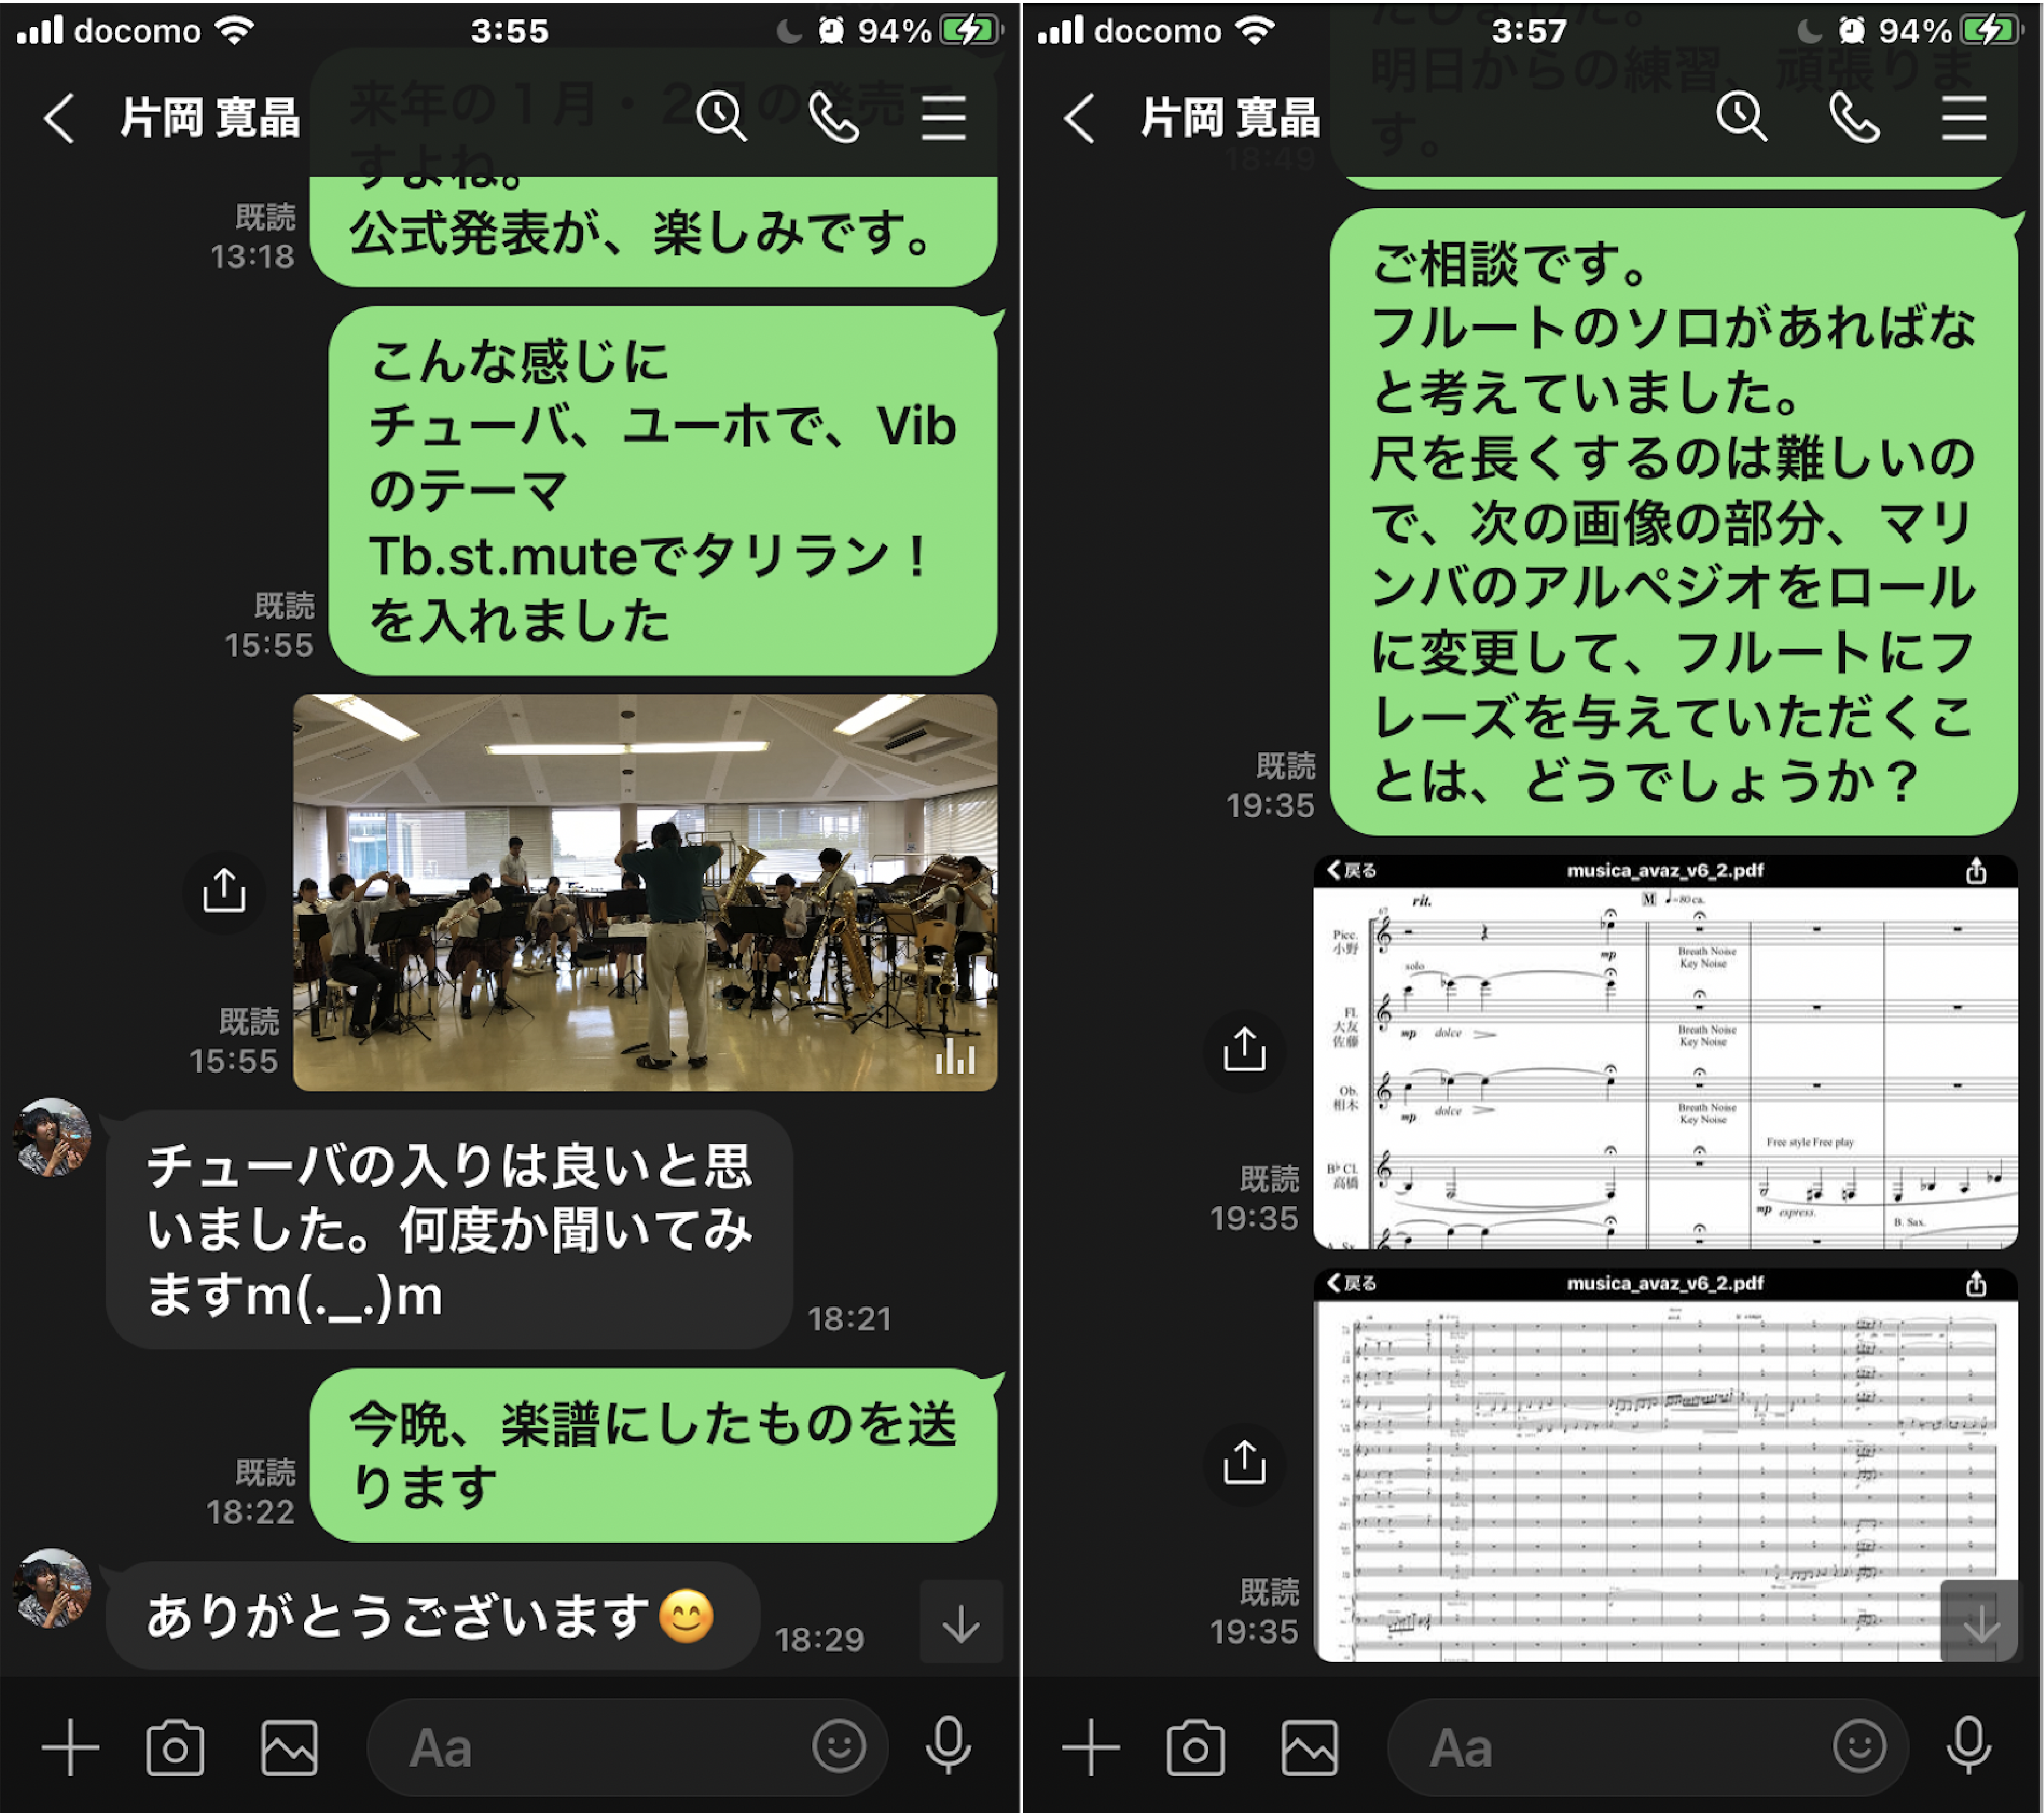 『ムジカ・アーバーズ2019』の追加部分について、楽譜のFinaleデータと演奏デモ動画を、仙台-東京間でスマホのLINEアプリにてやりとり。